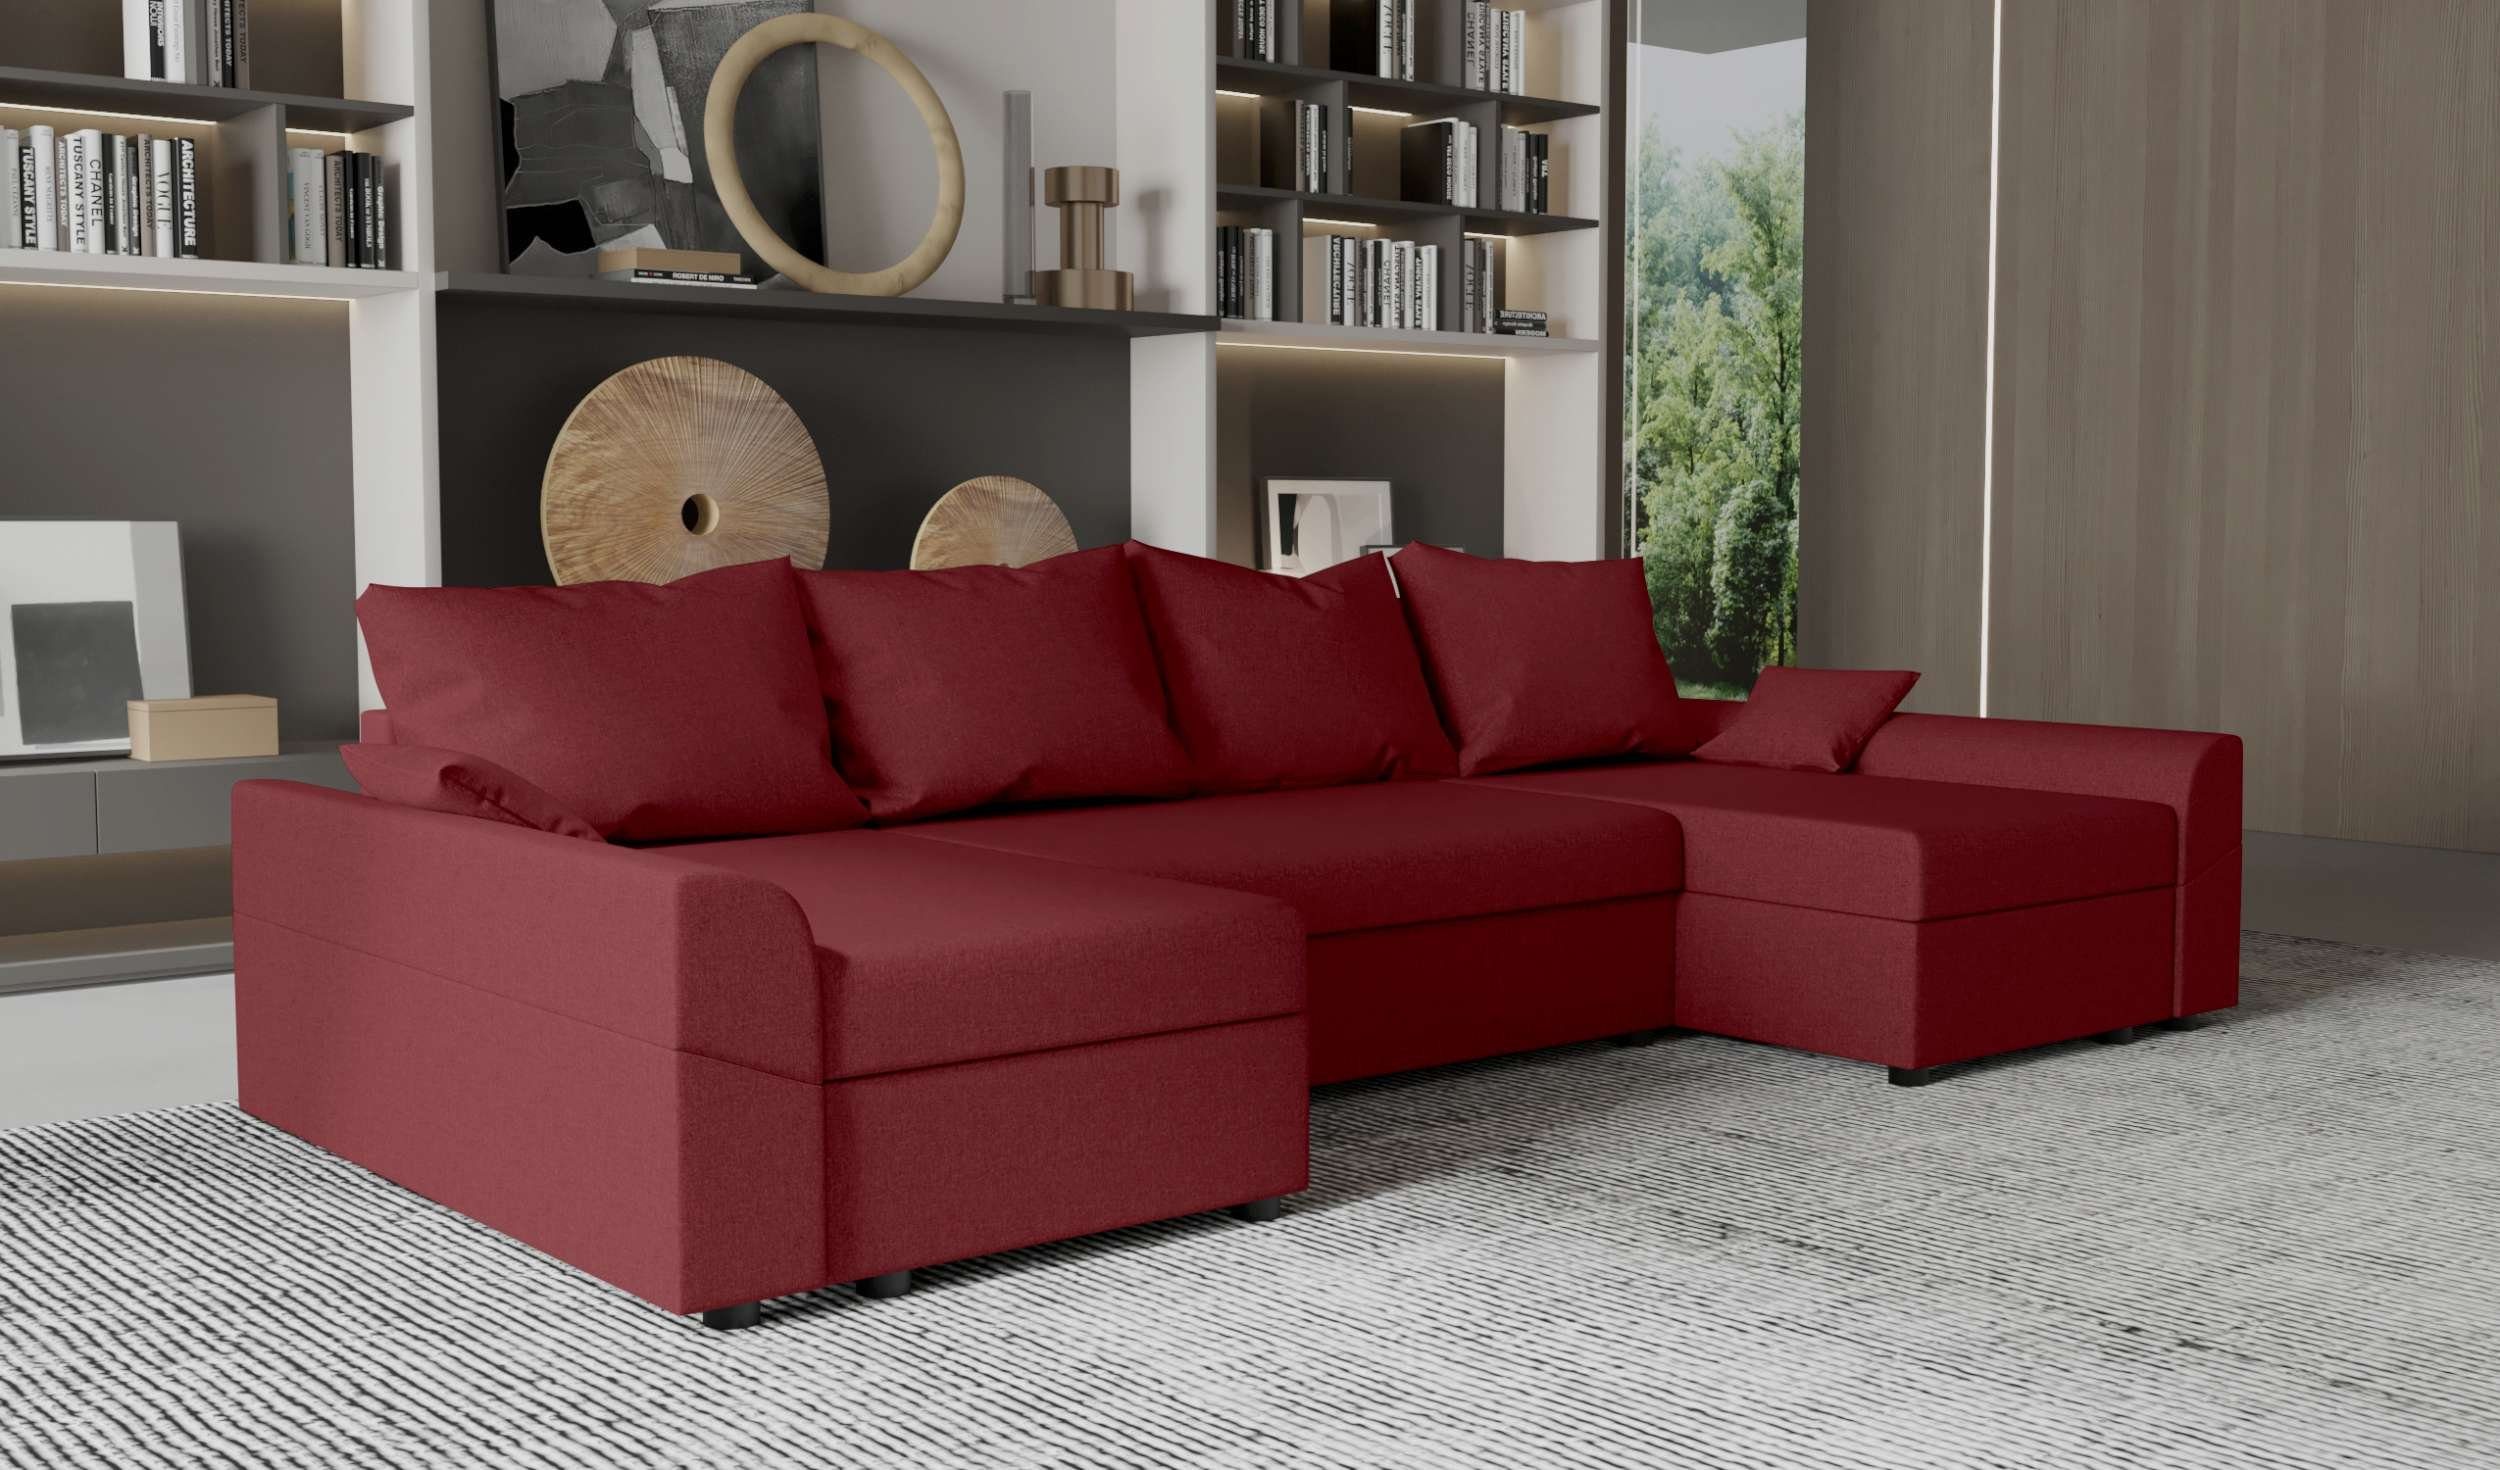 Sofa, Sitzkomfort, Design Modern U-Form, mit Carolina, Wohnlandschaft Bettfunktion, mit Stylefy Eckcouch, Bettkasten,